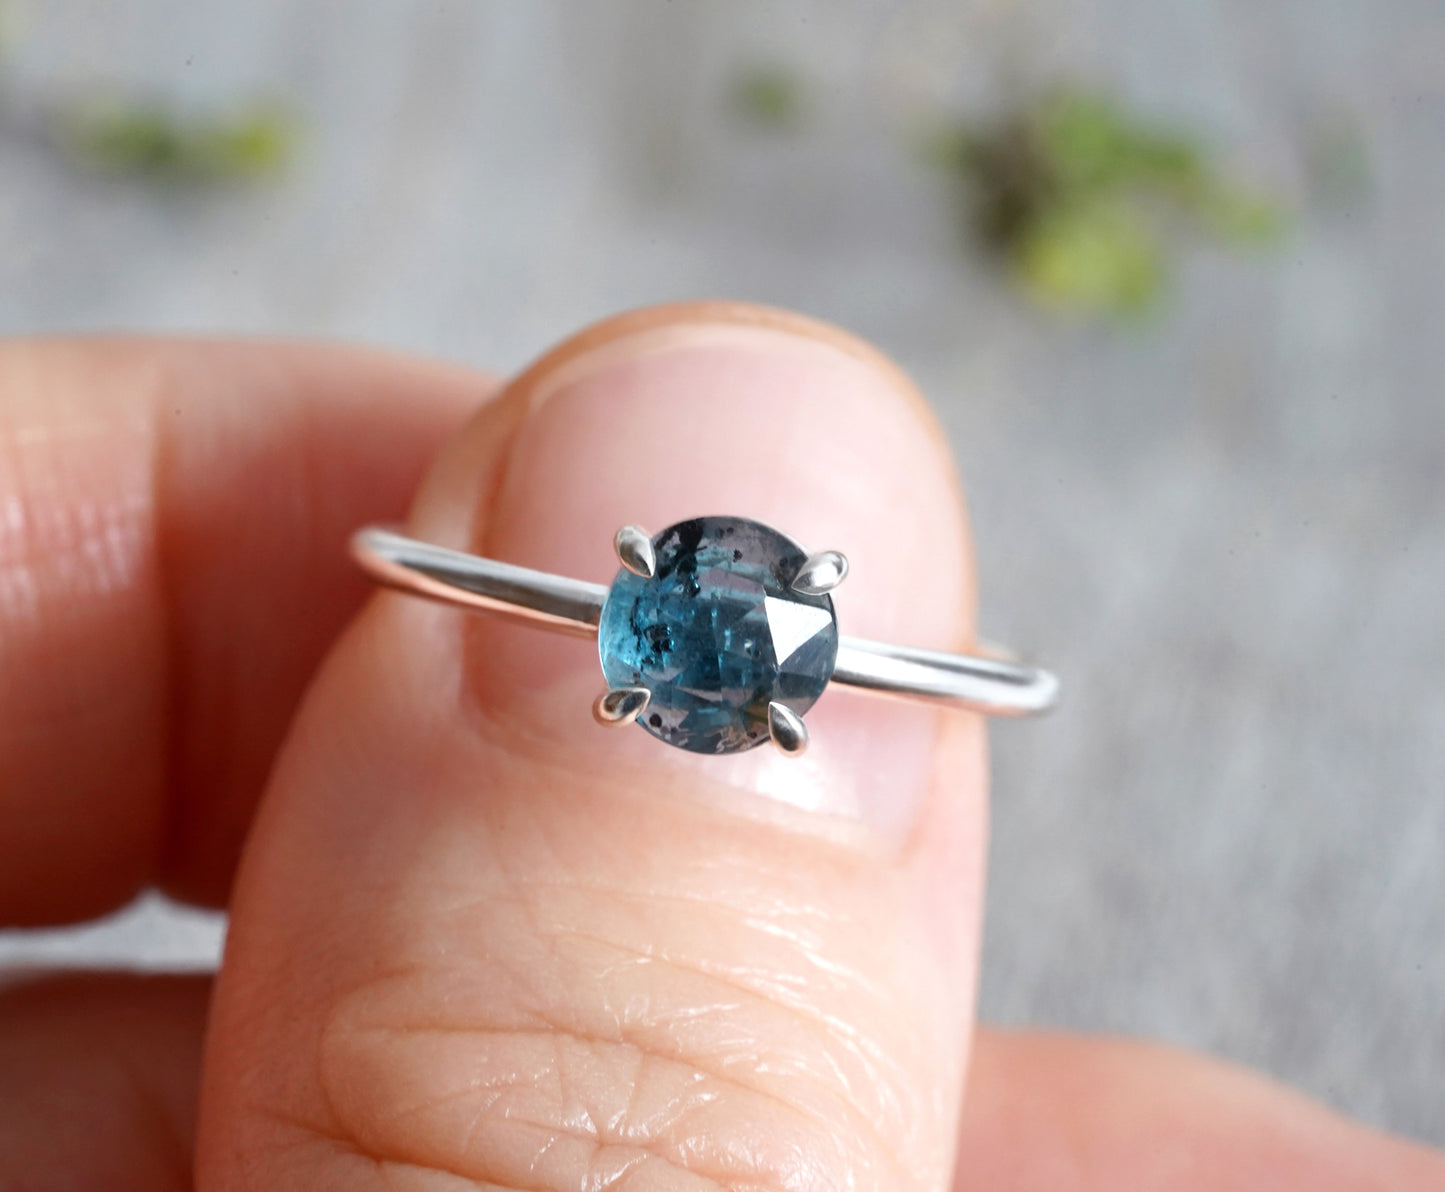 Kyanite Ring in Peacock Blue, Kyanite Ring in Solid Sterling Silver